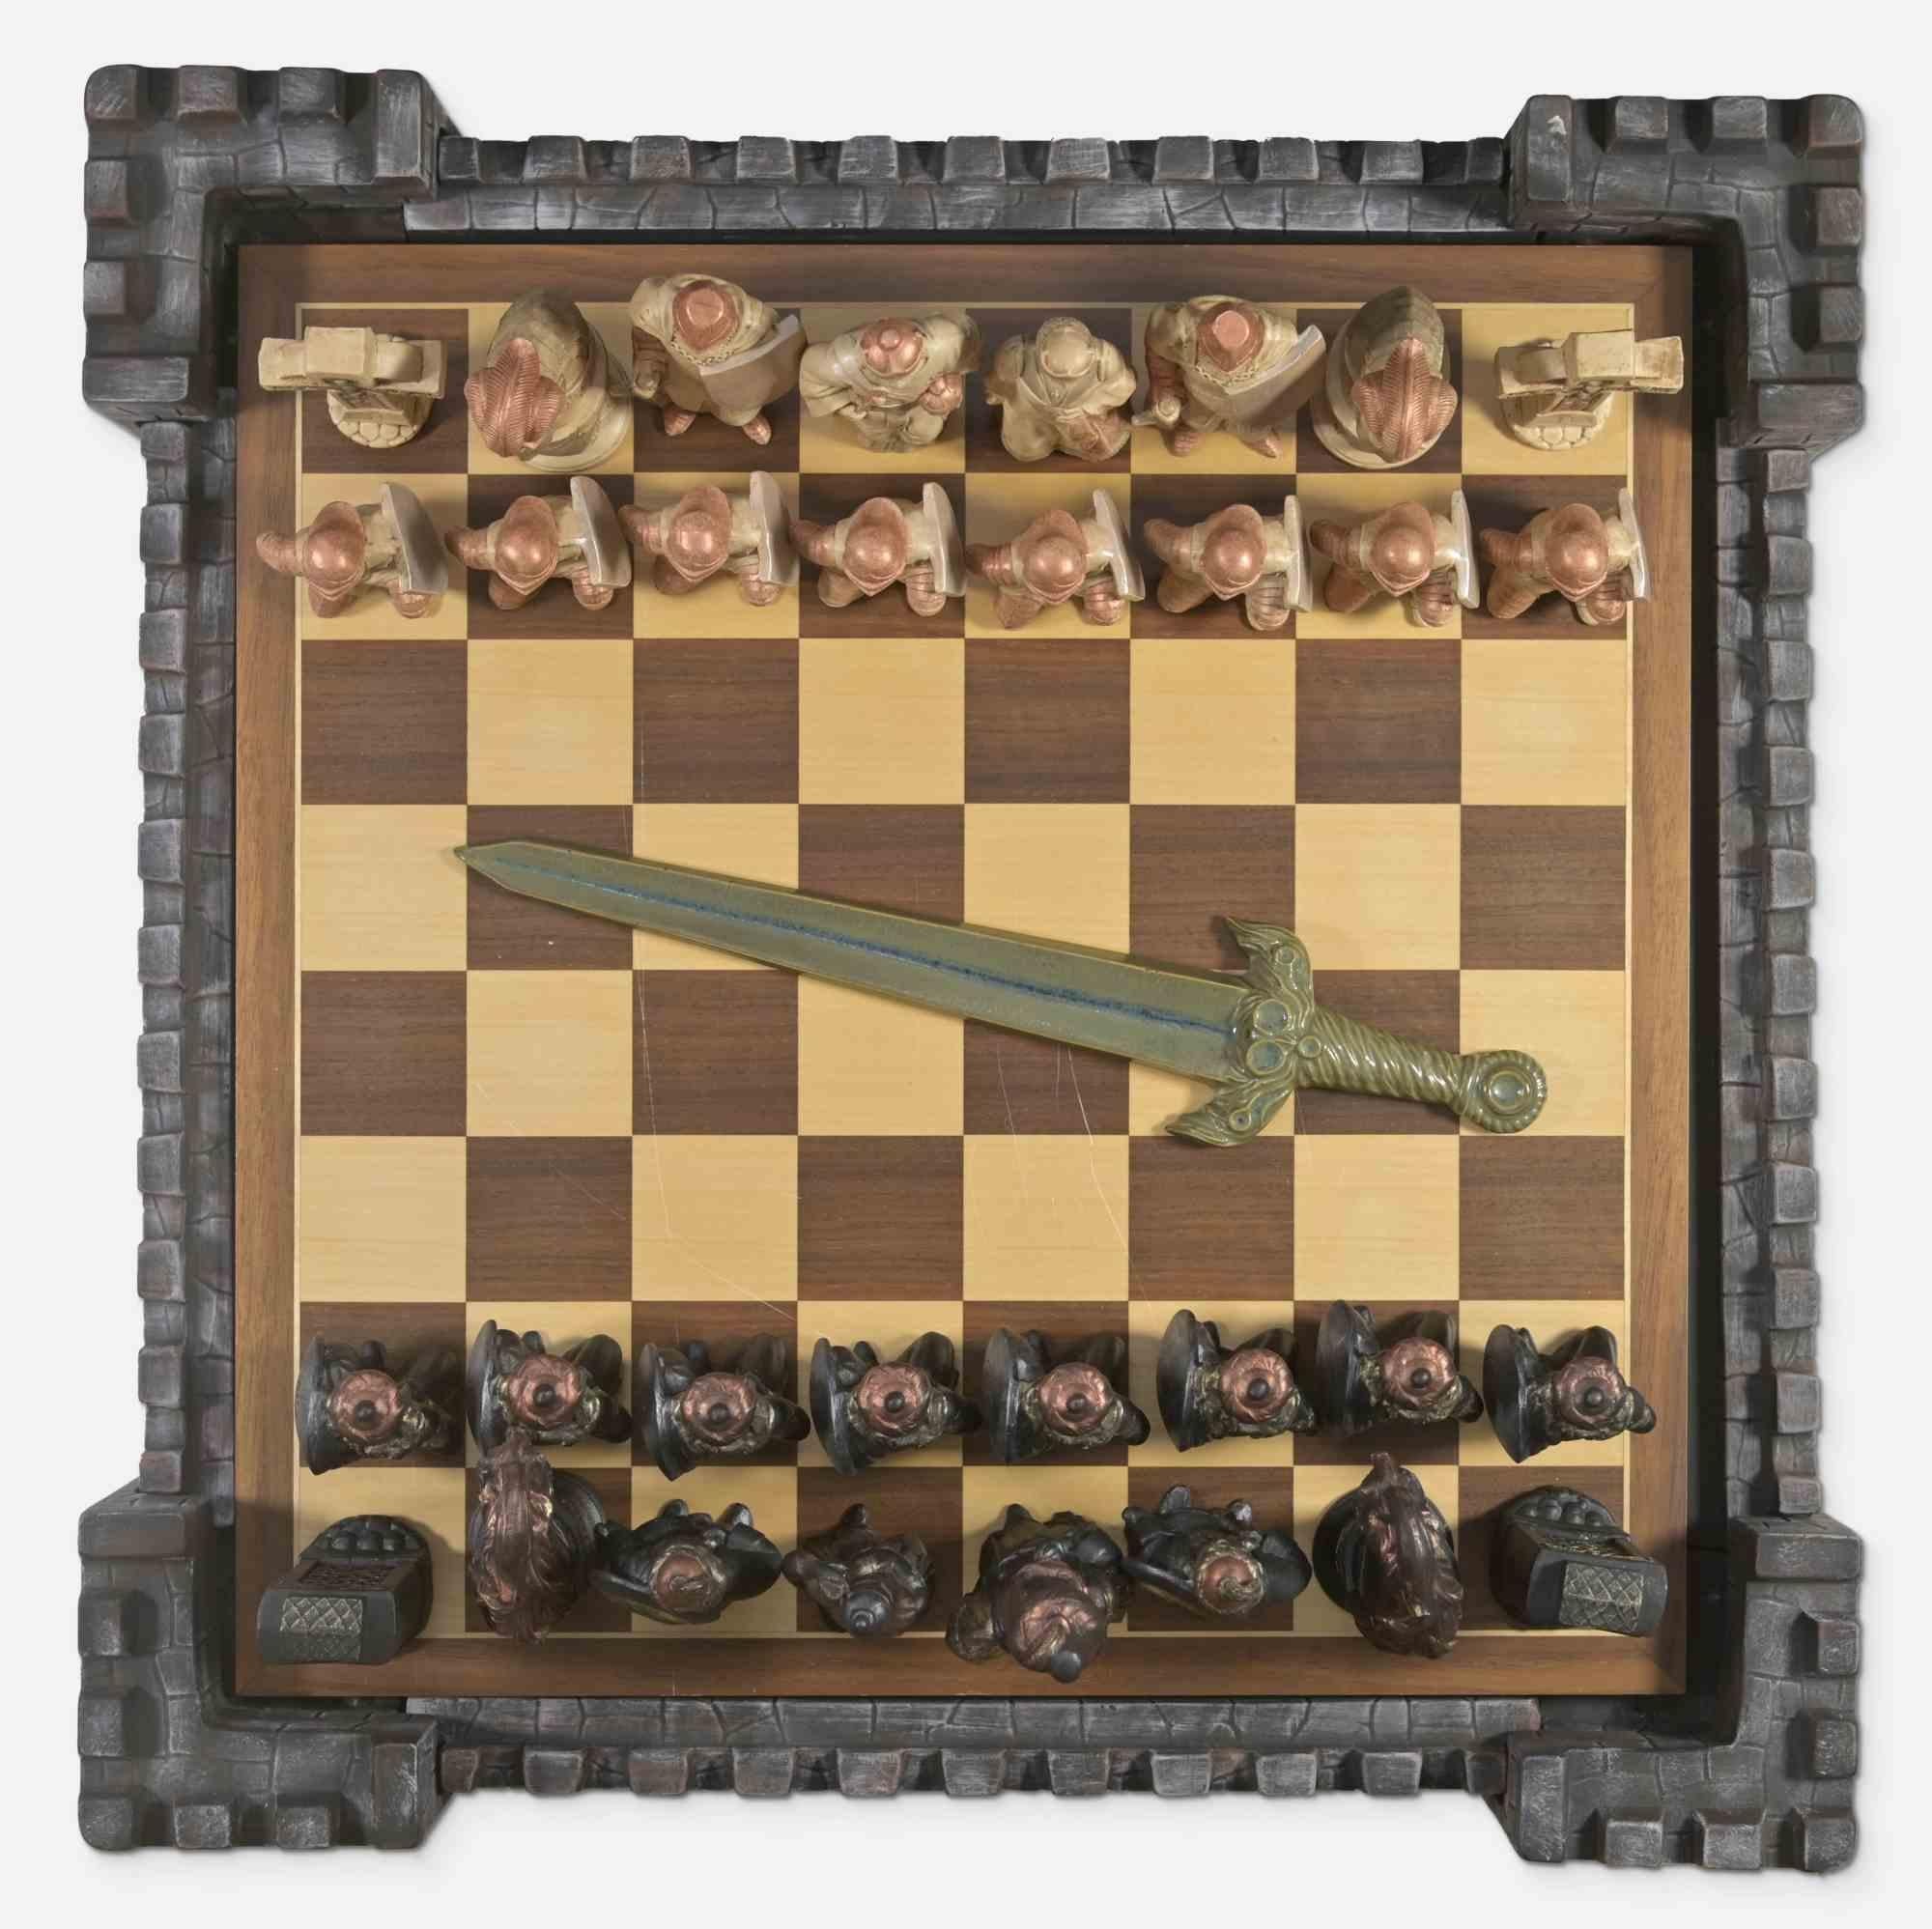 Ce jeu d'échecs médiéval en céramique est composé de personnages médiévaux et d'un échiquier en bois. 

Dimensions : cm 26 x 60 x 60.

Bonnes conditions.

La forme de l'ensemble rappelle celle d'un ancien château médiéval.

Si vous êtes fasciné par